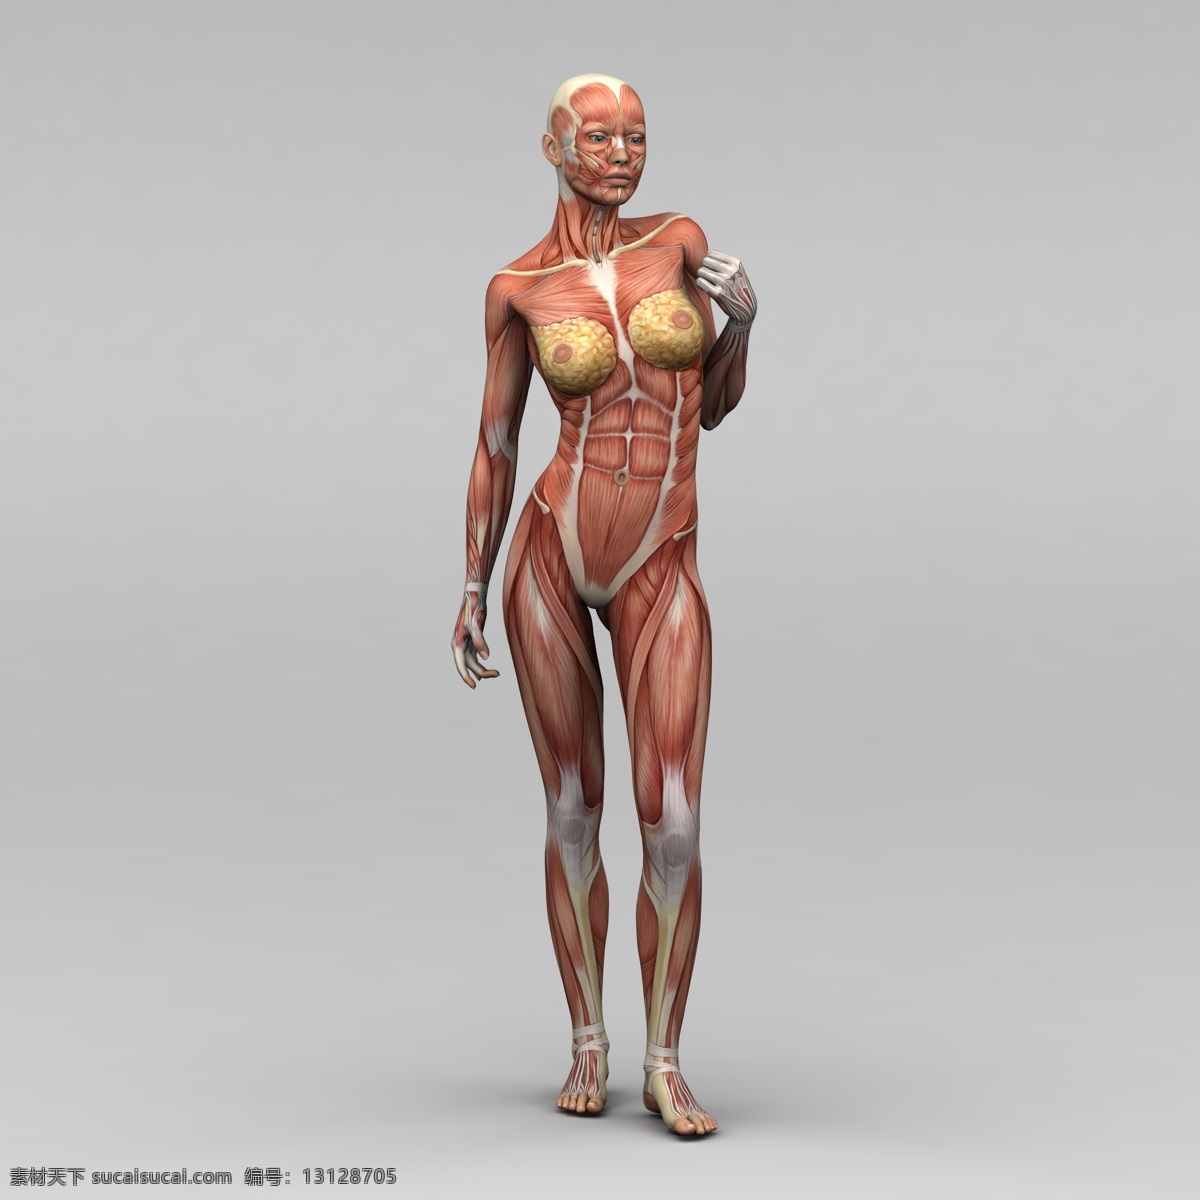 女性人体 人体肌肉 肌肉 人体结构 人体解刨 西医 医院 人体构造 皮下肌肉 医学 人体工学 女性肌肉 女性器官 肌肉分布 肌肉结构 人体研究 生命科技 立体人体 三维人体 人物图库 其他人物